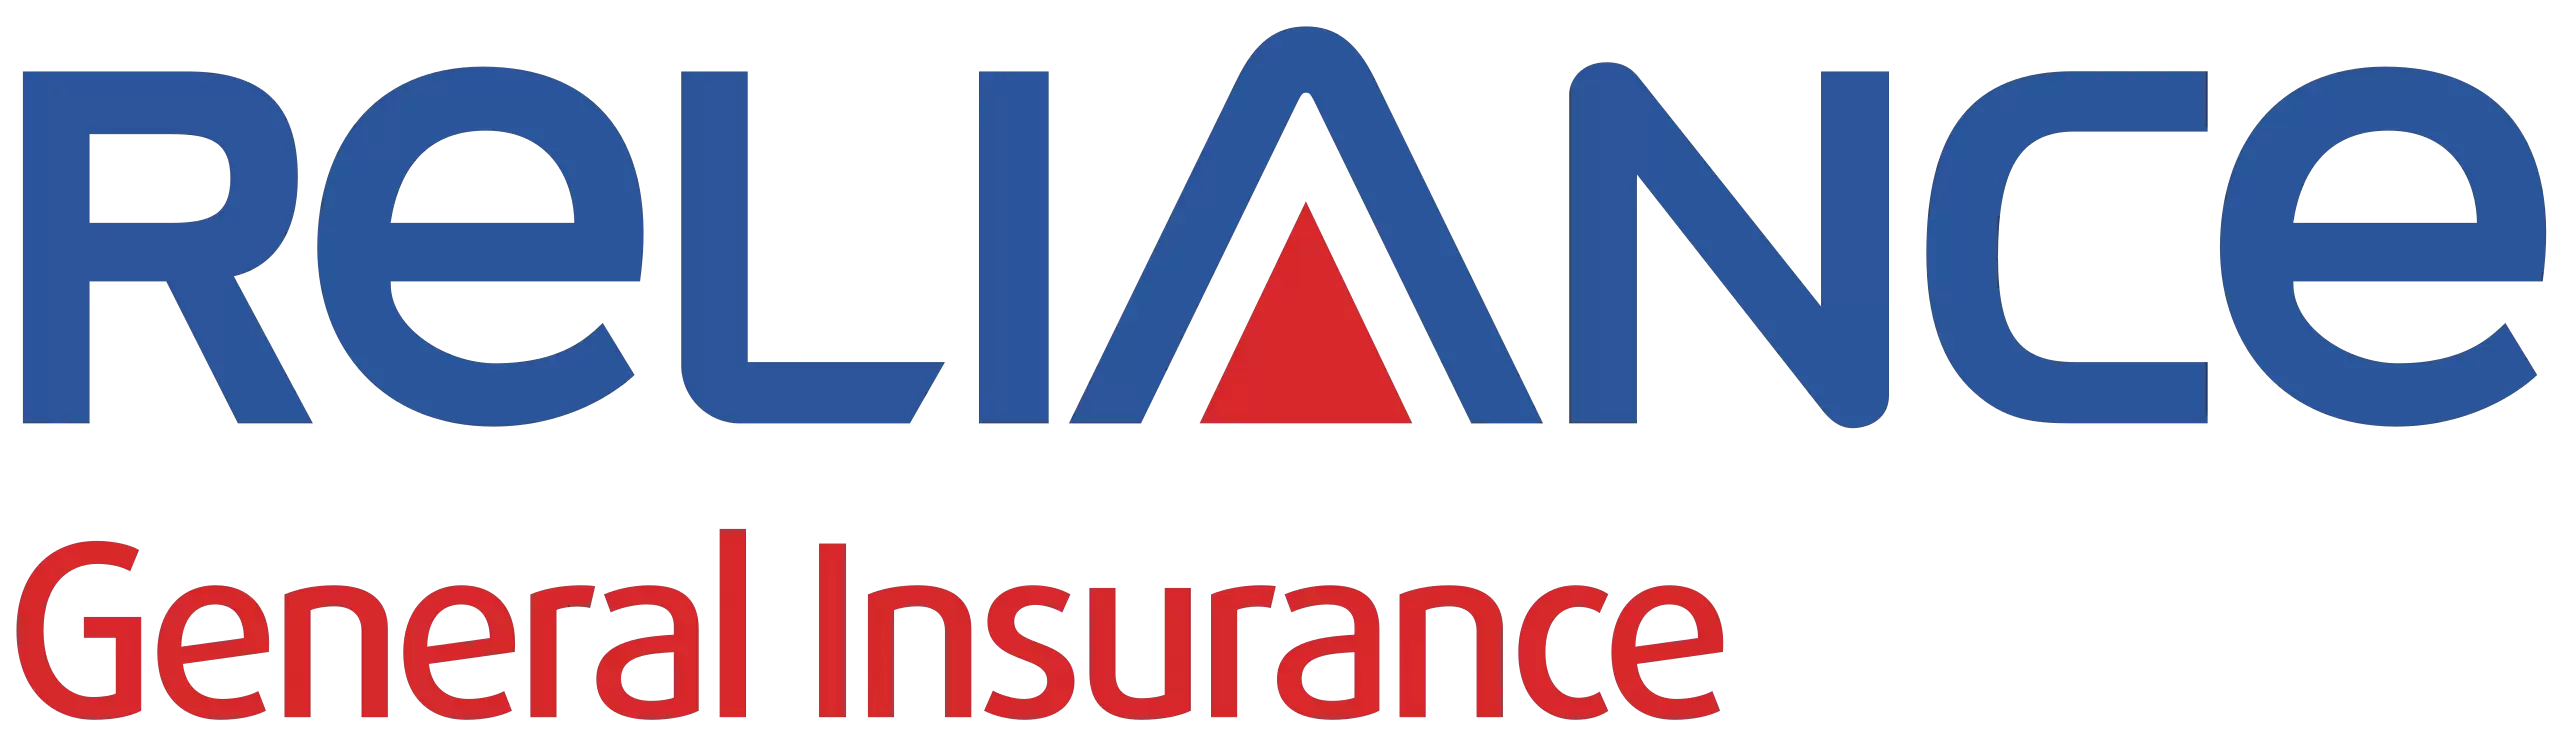 Reliance General Insurance Co. Ltd. 